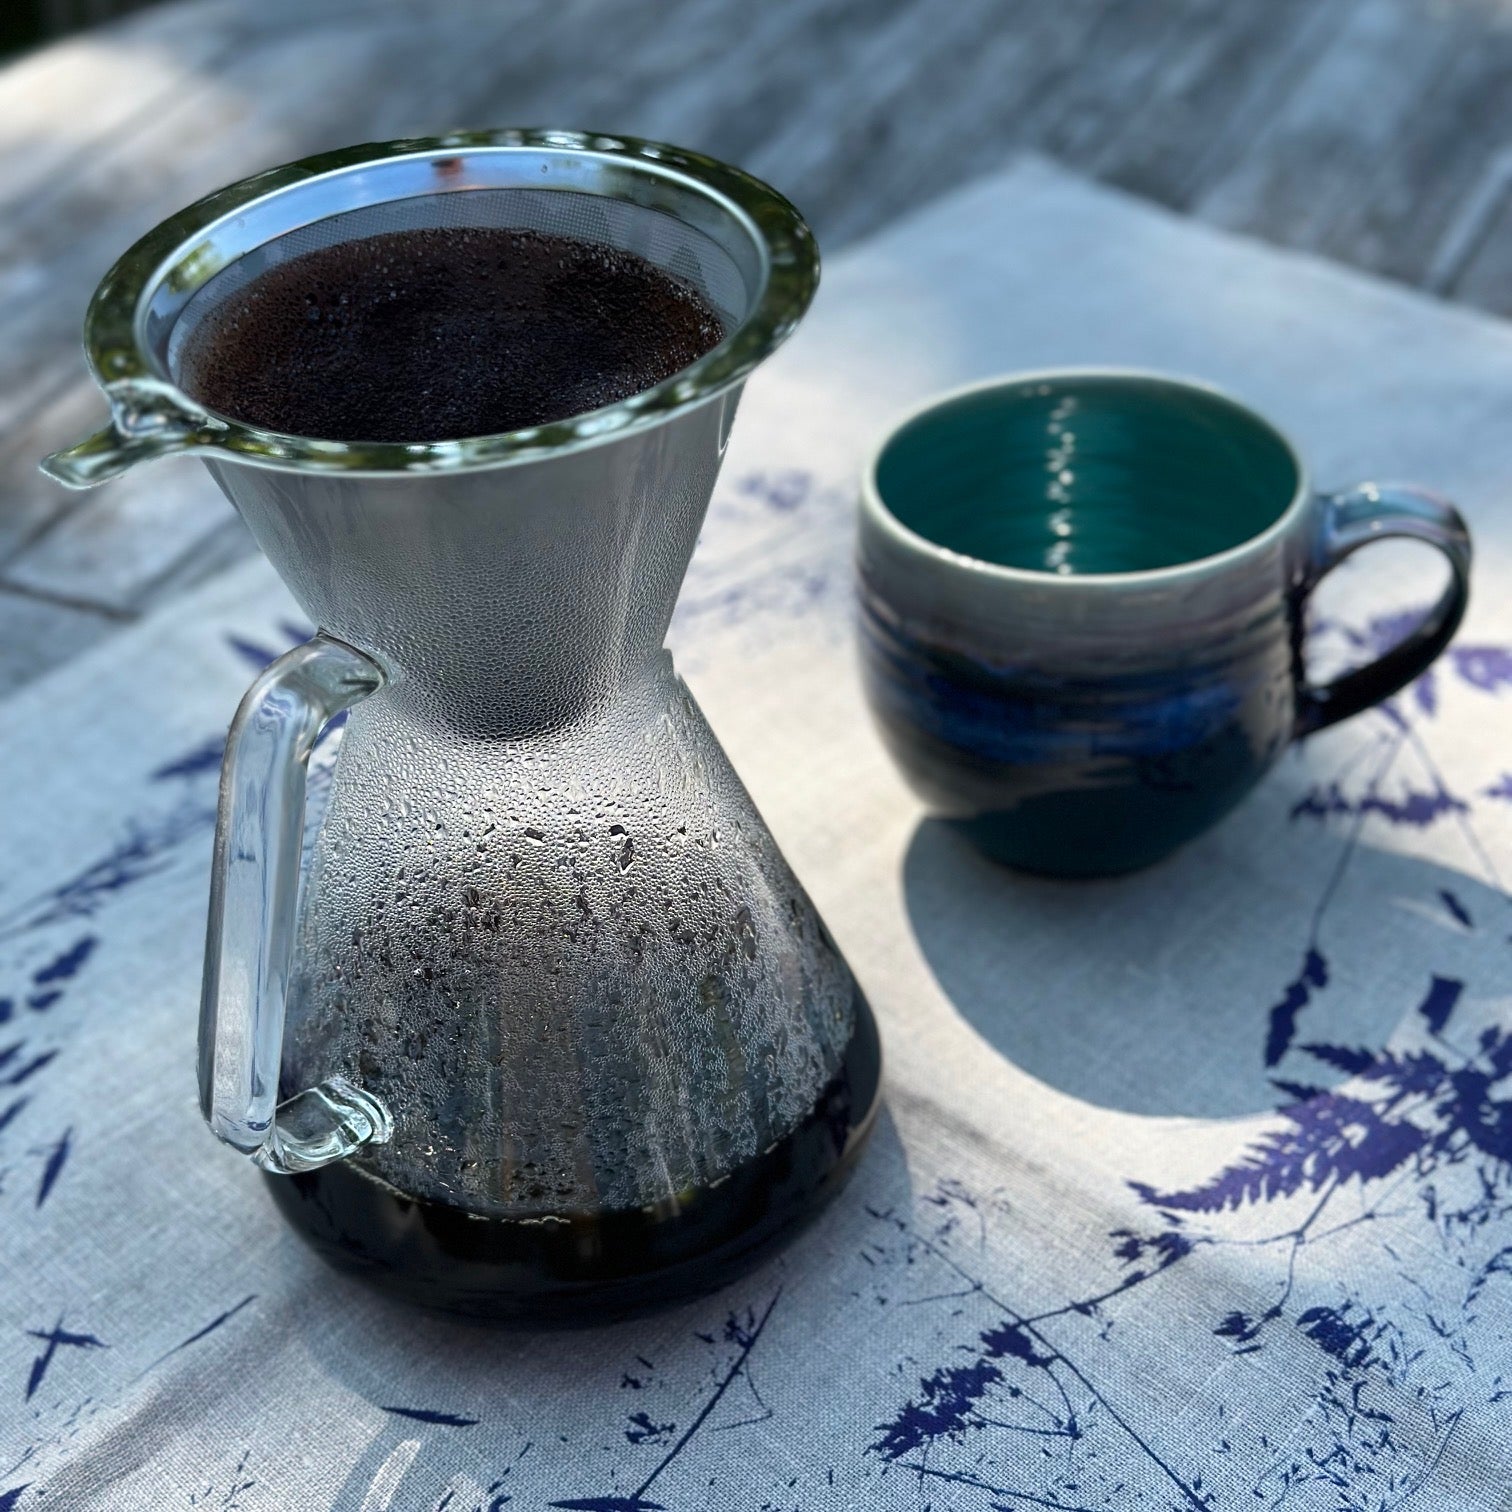 kaffeebereiter aus glas mit edelstahlfilter auf dem tisch mit blauer keramiktasse